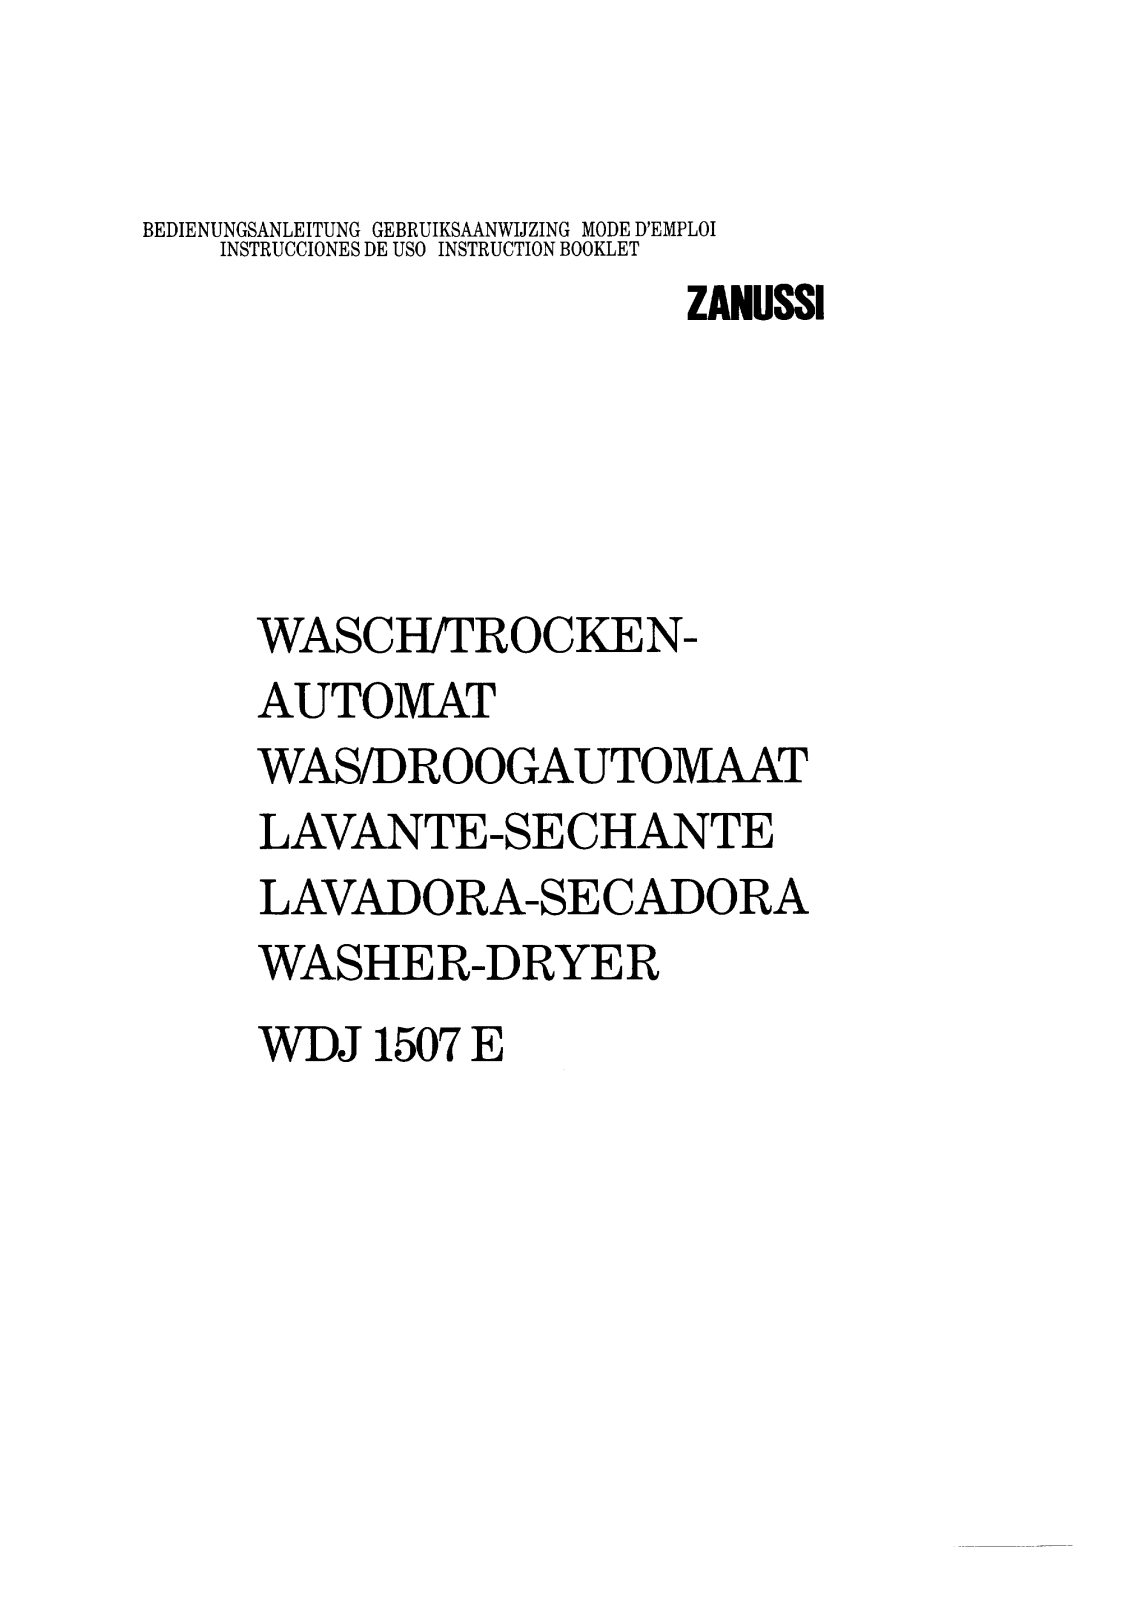 Zanussi WDJ1507 User Manual